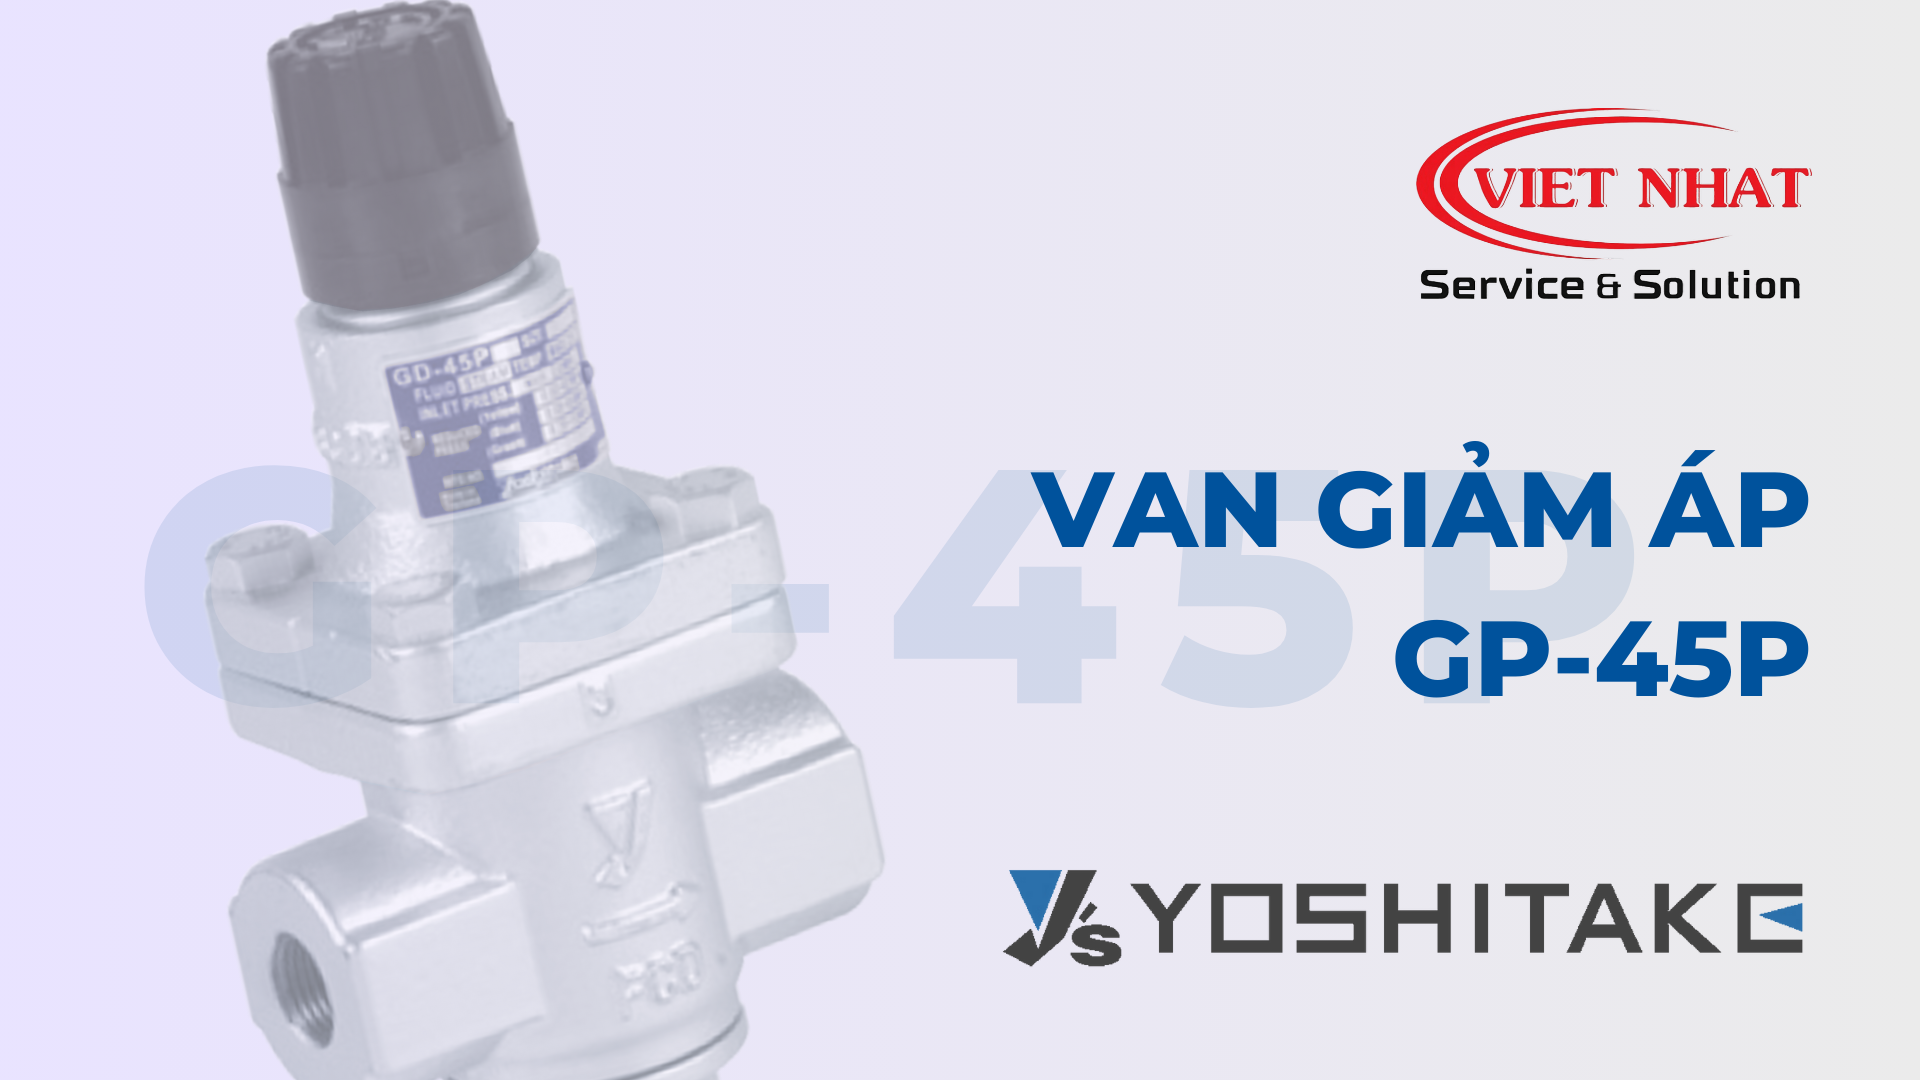 Van giảm áp GD-45P của Yoshitake: Điều chỉnh Áp suất Hơi Nóng Hiệu quả và An toàn